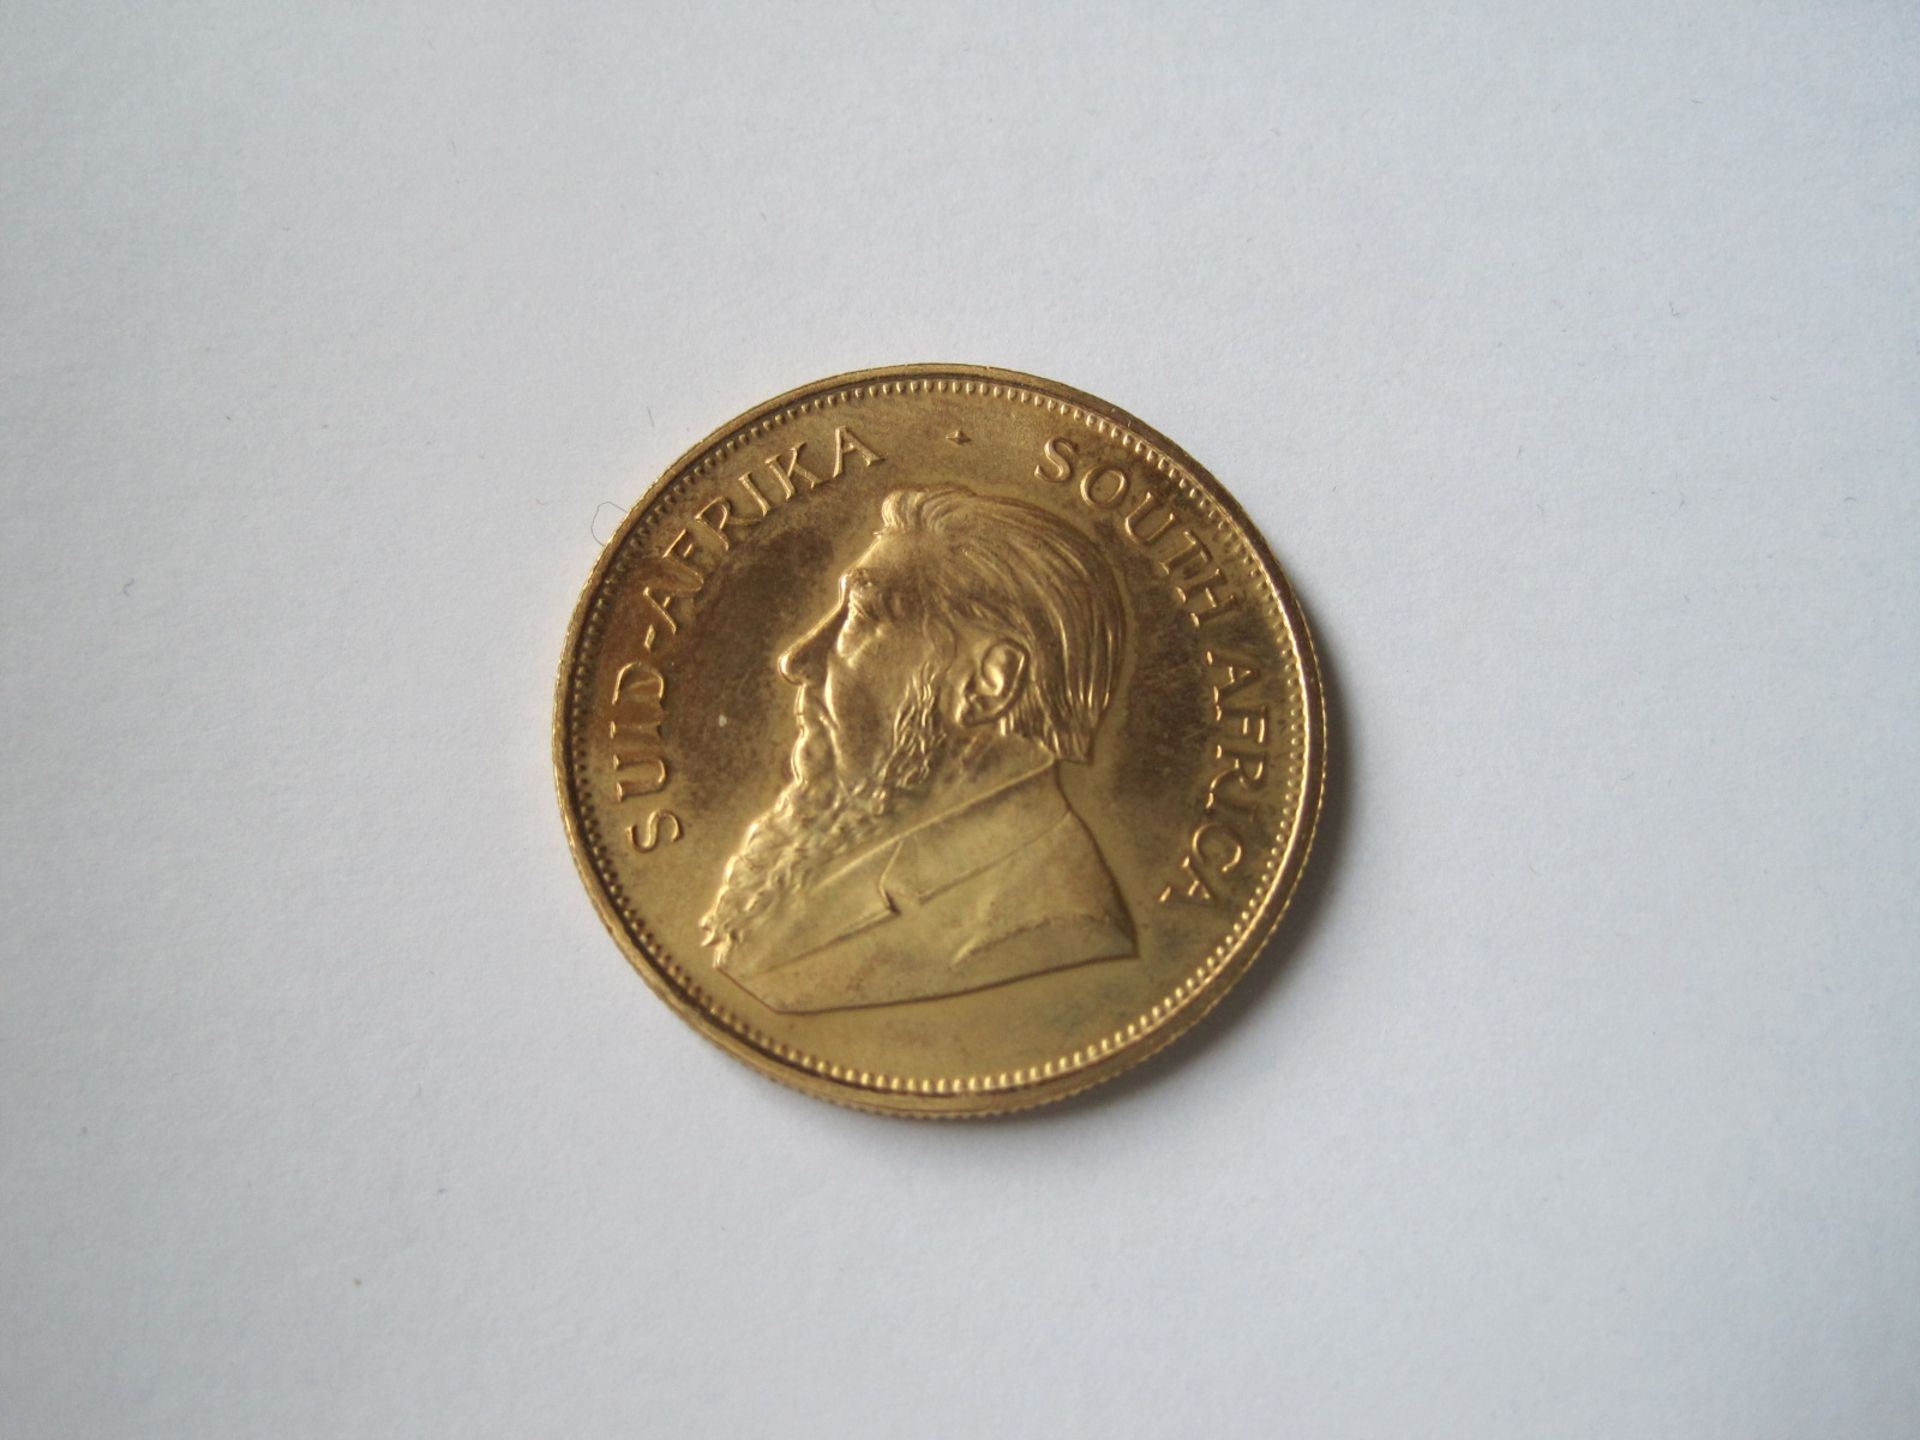 Krugerrand gold coin from South Africa, 1984 - Net weight: 33.93 g - - Pièce en or [...] - Bild 2 aus 2